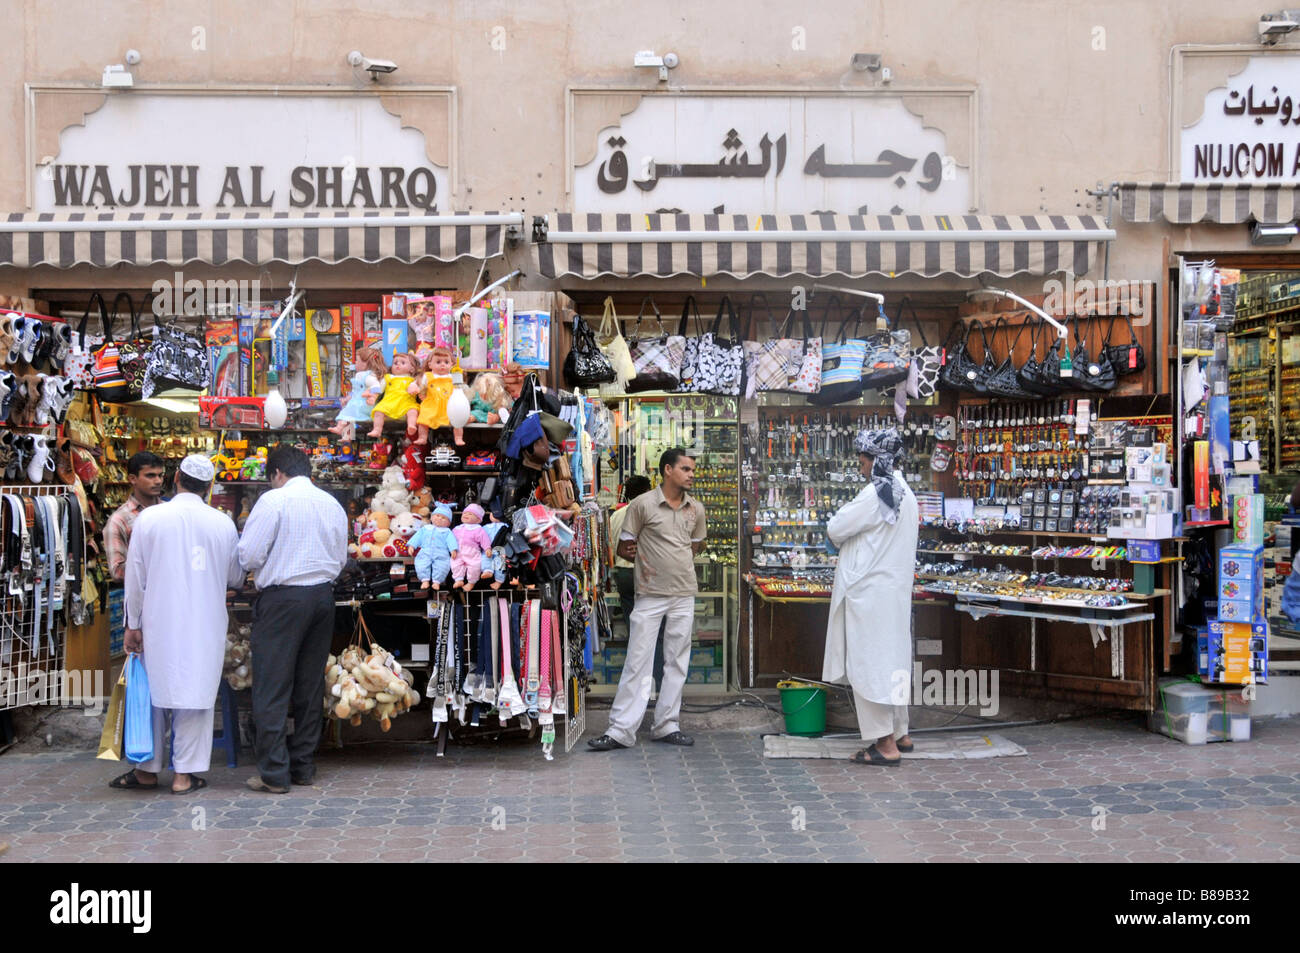 People & Dubai shopping Street scene piccoli negozi e negozi esposizione vendita di merci variegate per gli acquirenti Emirati Arabi Uniti Emirati Arabi Uniti Medio Oriente Foto Stock